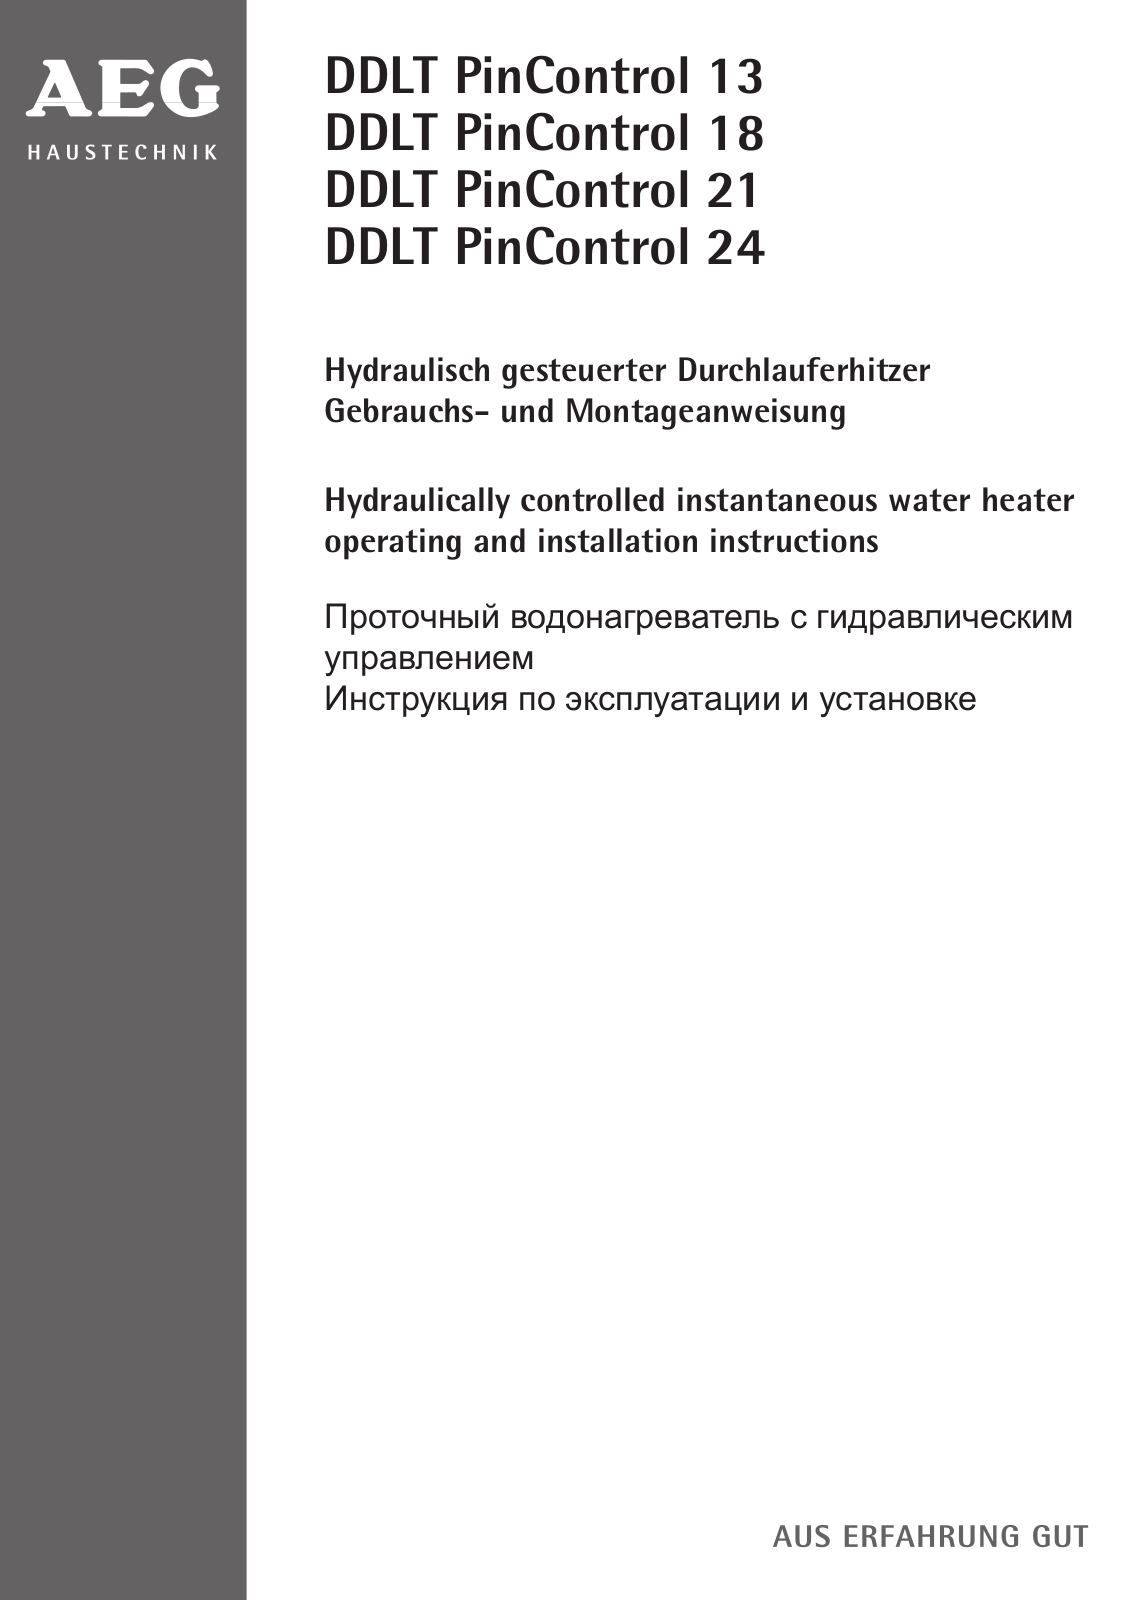 Aeg DDLT PinControl 13 User Manual